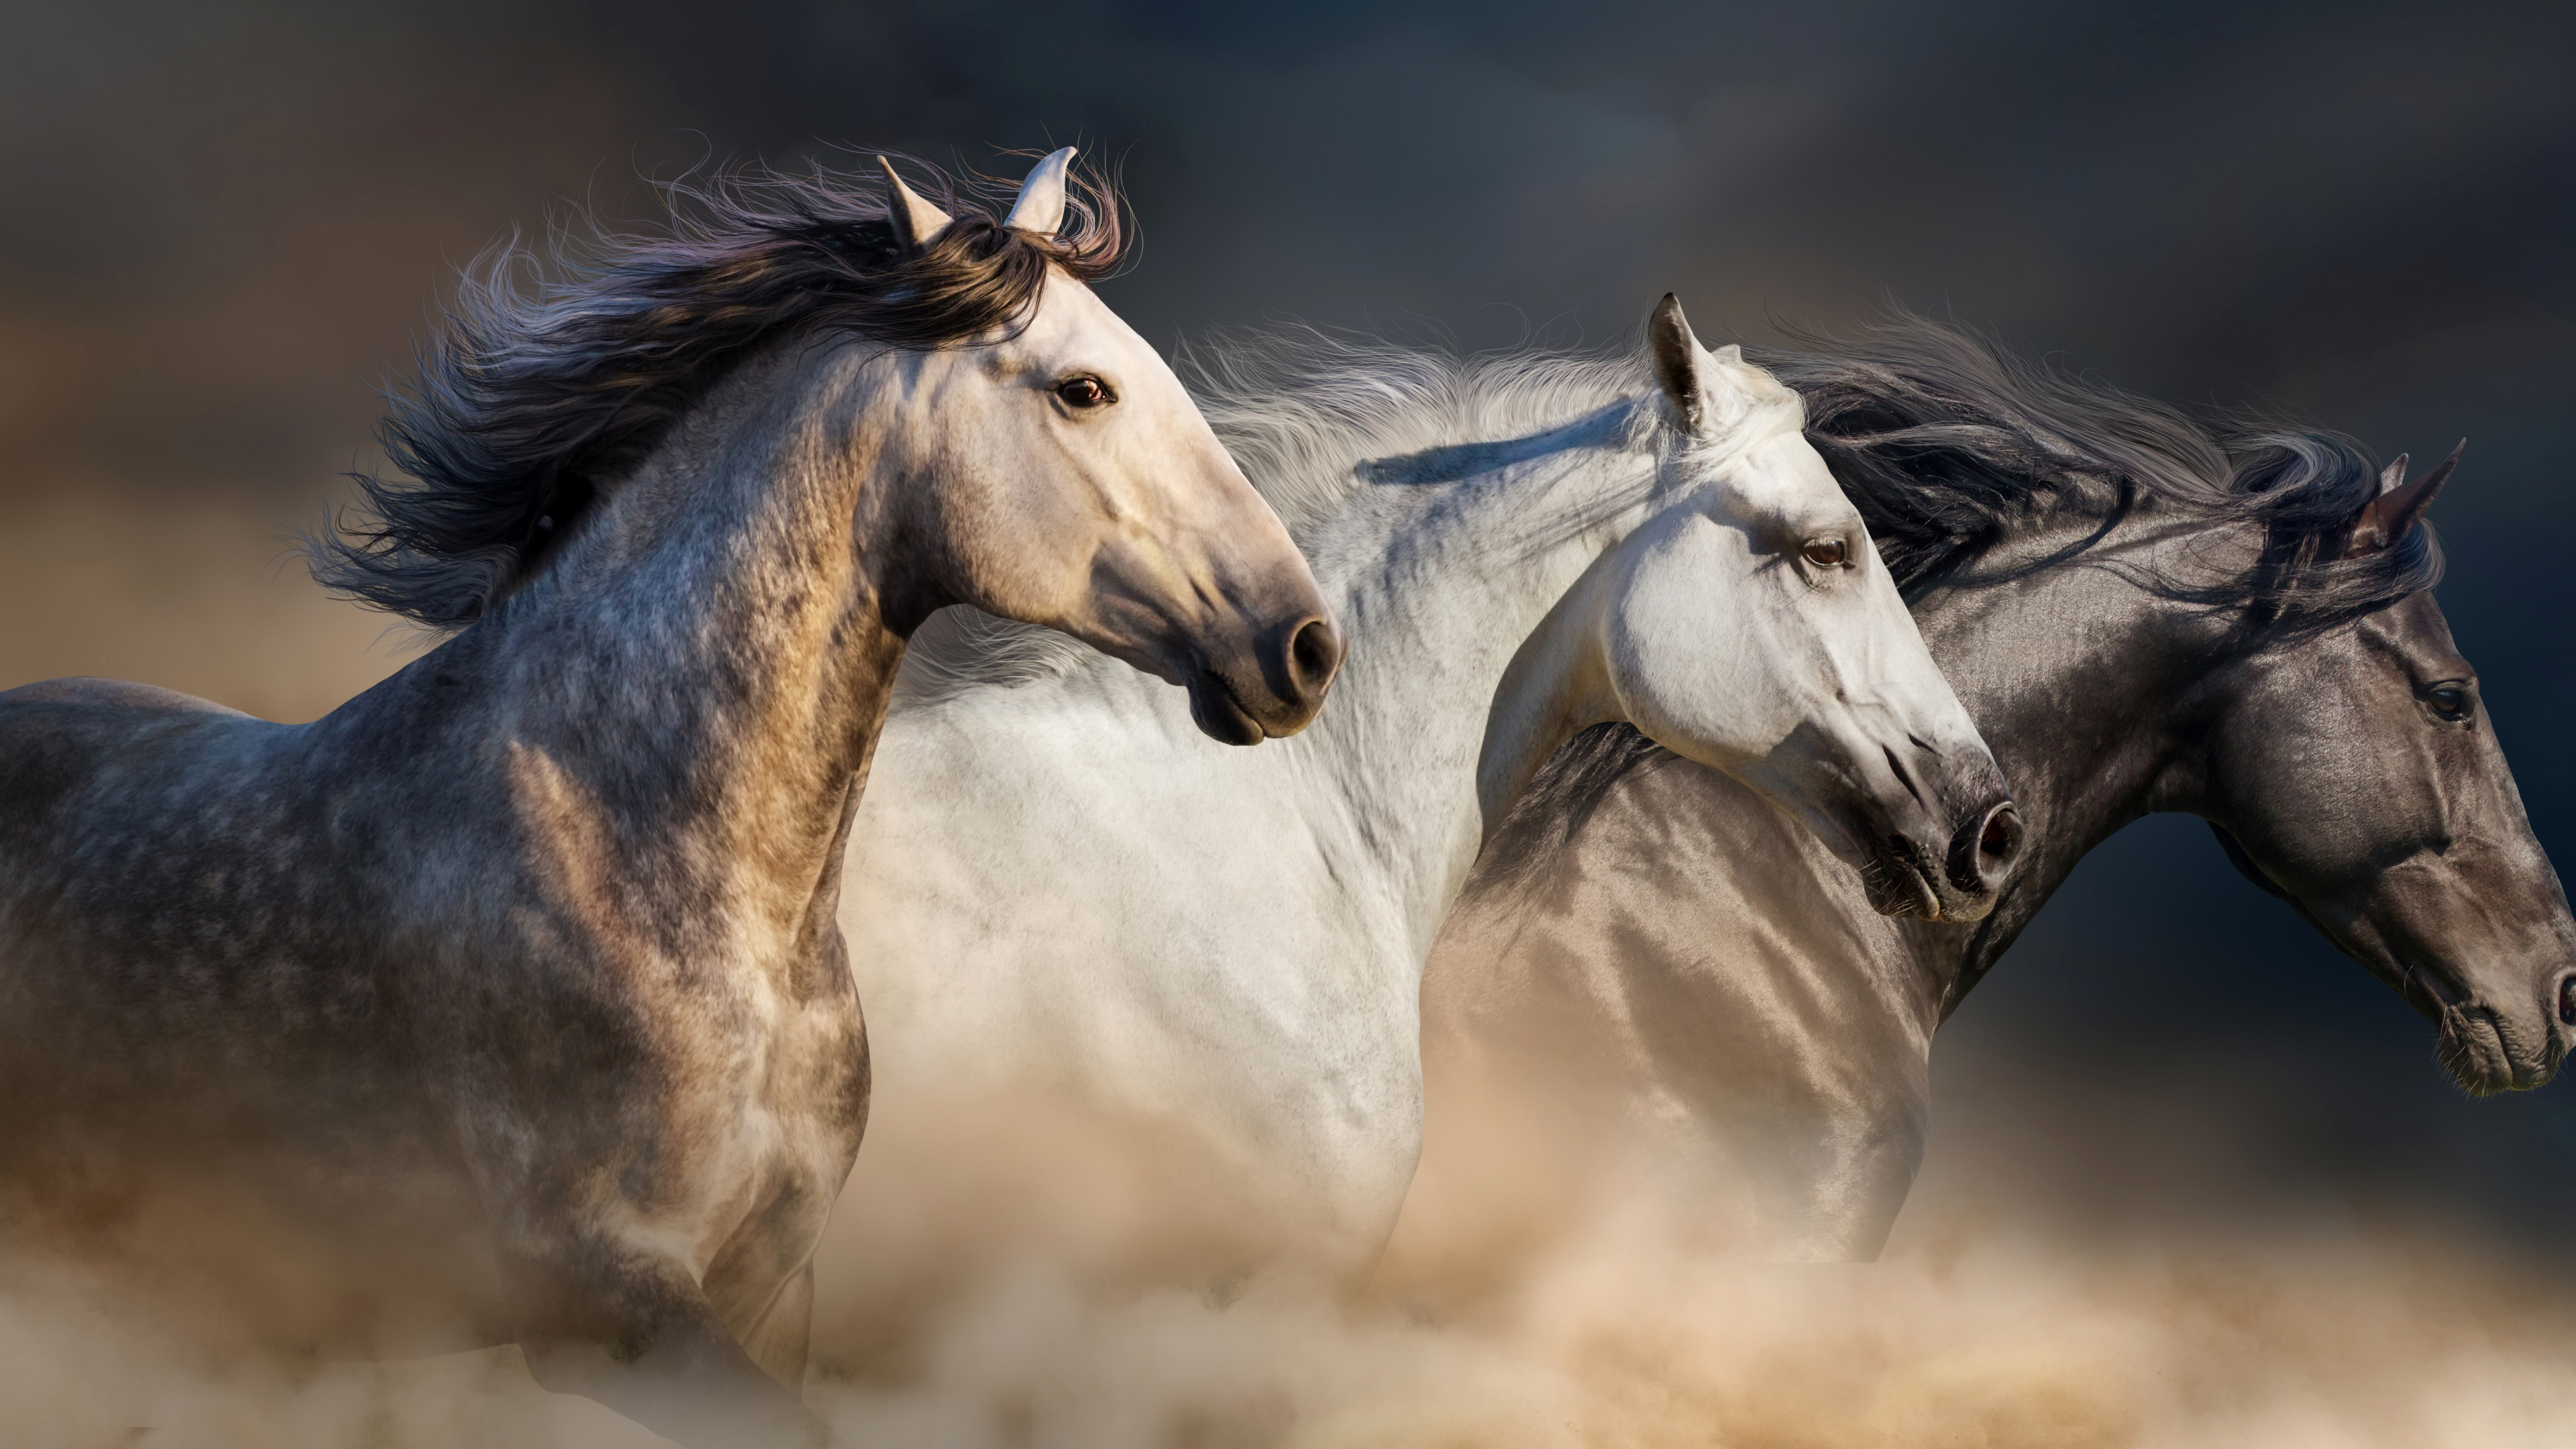 Download 3840x2160 Wallpaper Horses Animals 4 K Uhd 16 9 Widescreen